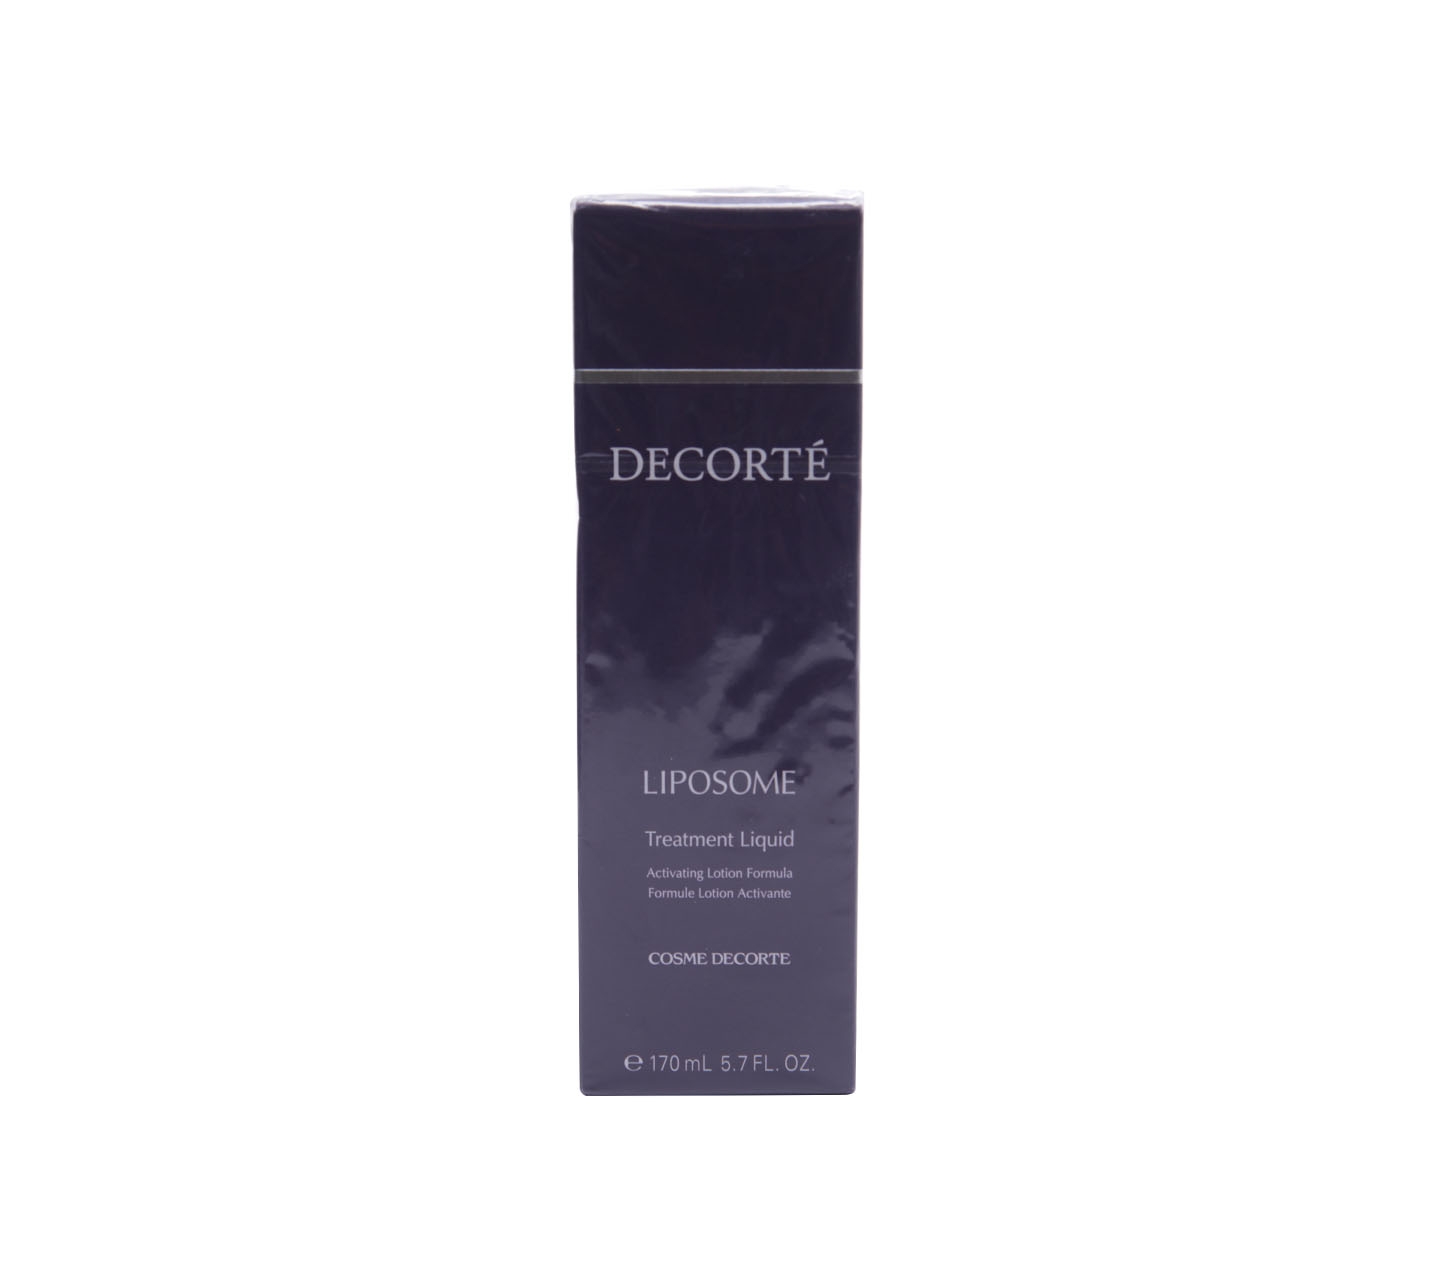 Decorte Liposome Treatment Liquid Skin Care